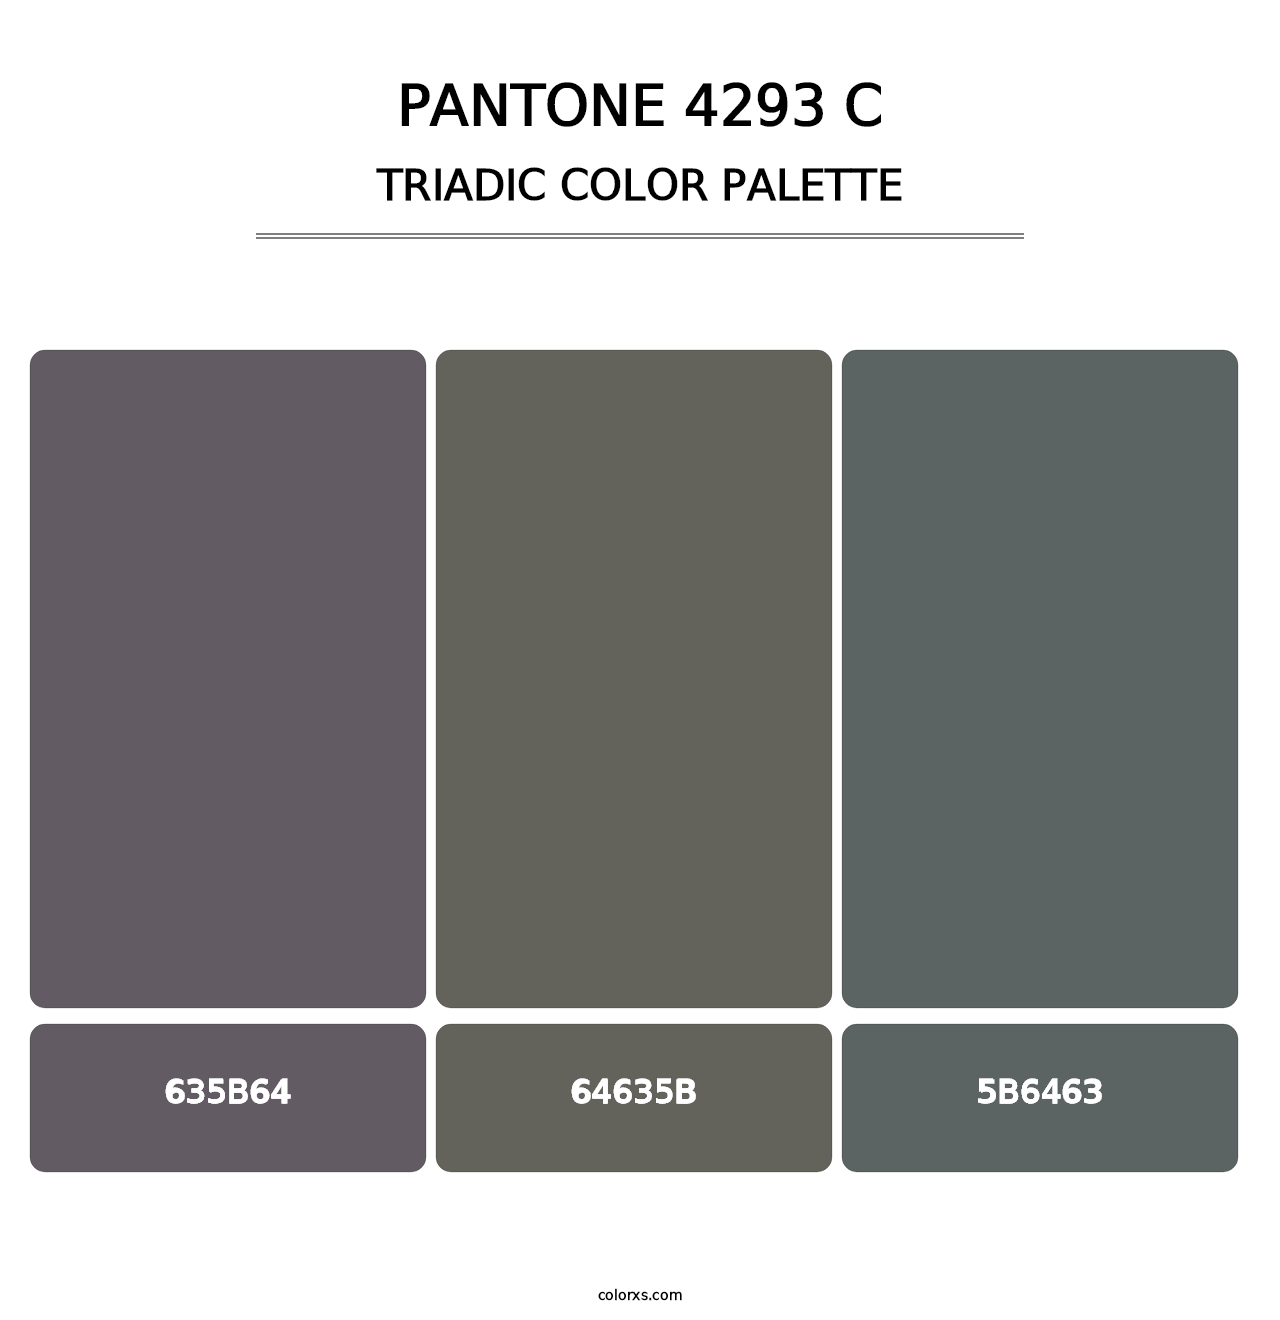 PANTONE 4293 C - Triadic Color Palette